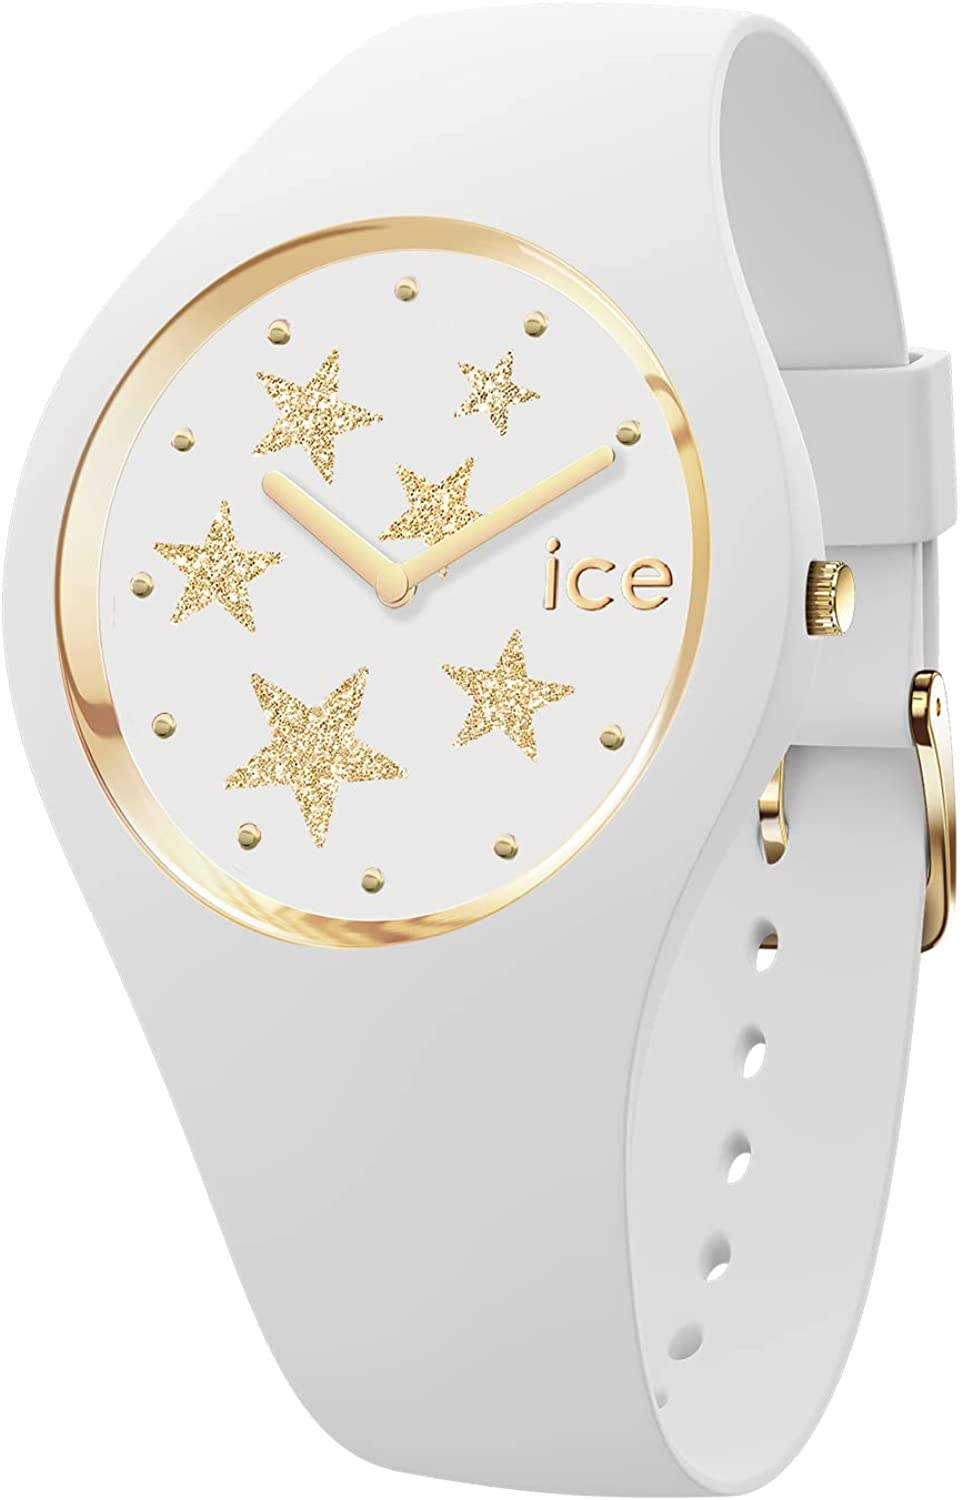 【人気沸騰】 腕時計 ICE glam rock ホワイトスターズ スモール 019856 レディース ホワイト その他 ブランド腕時計